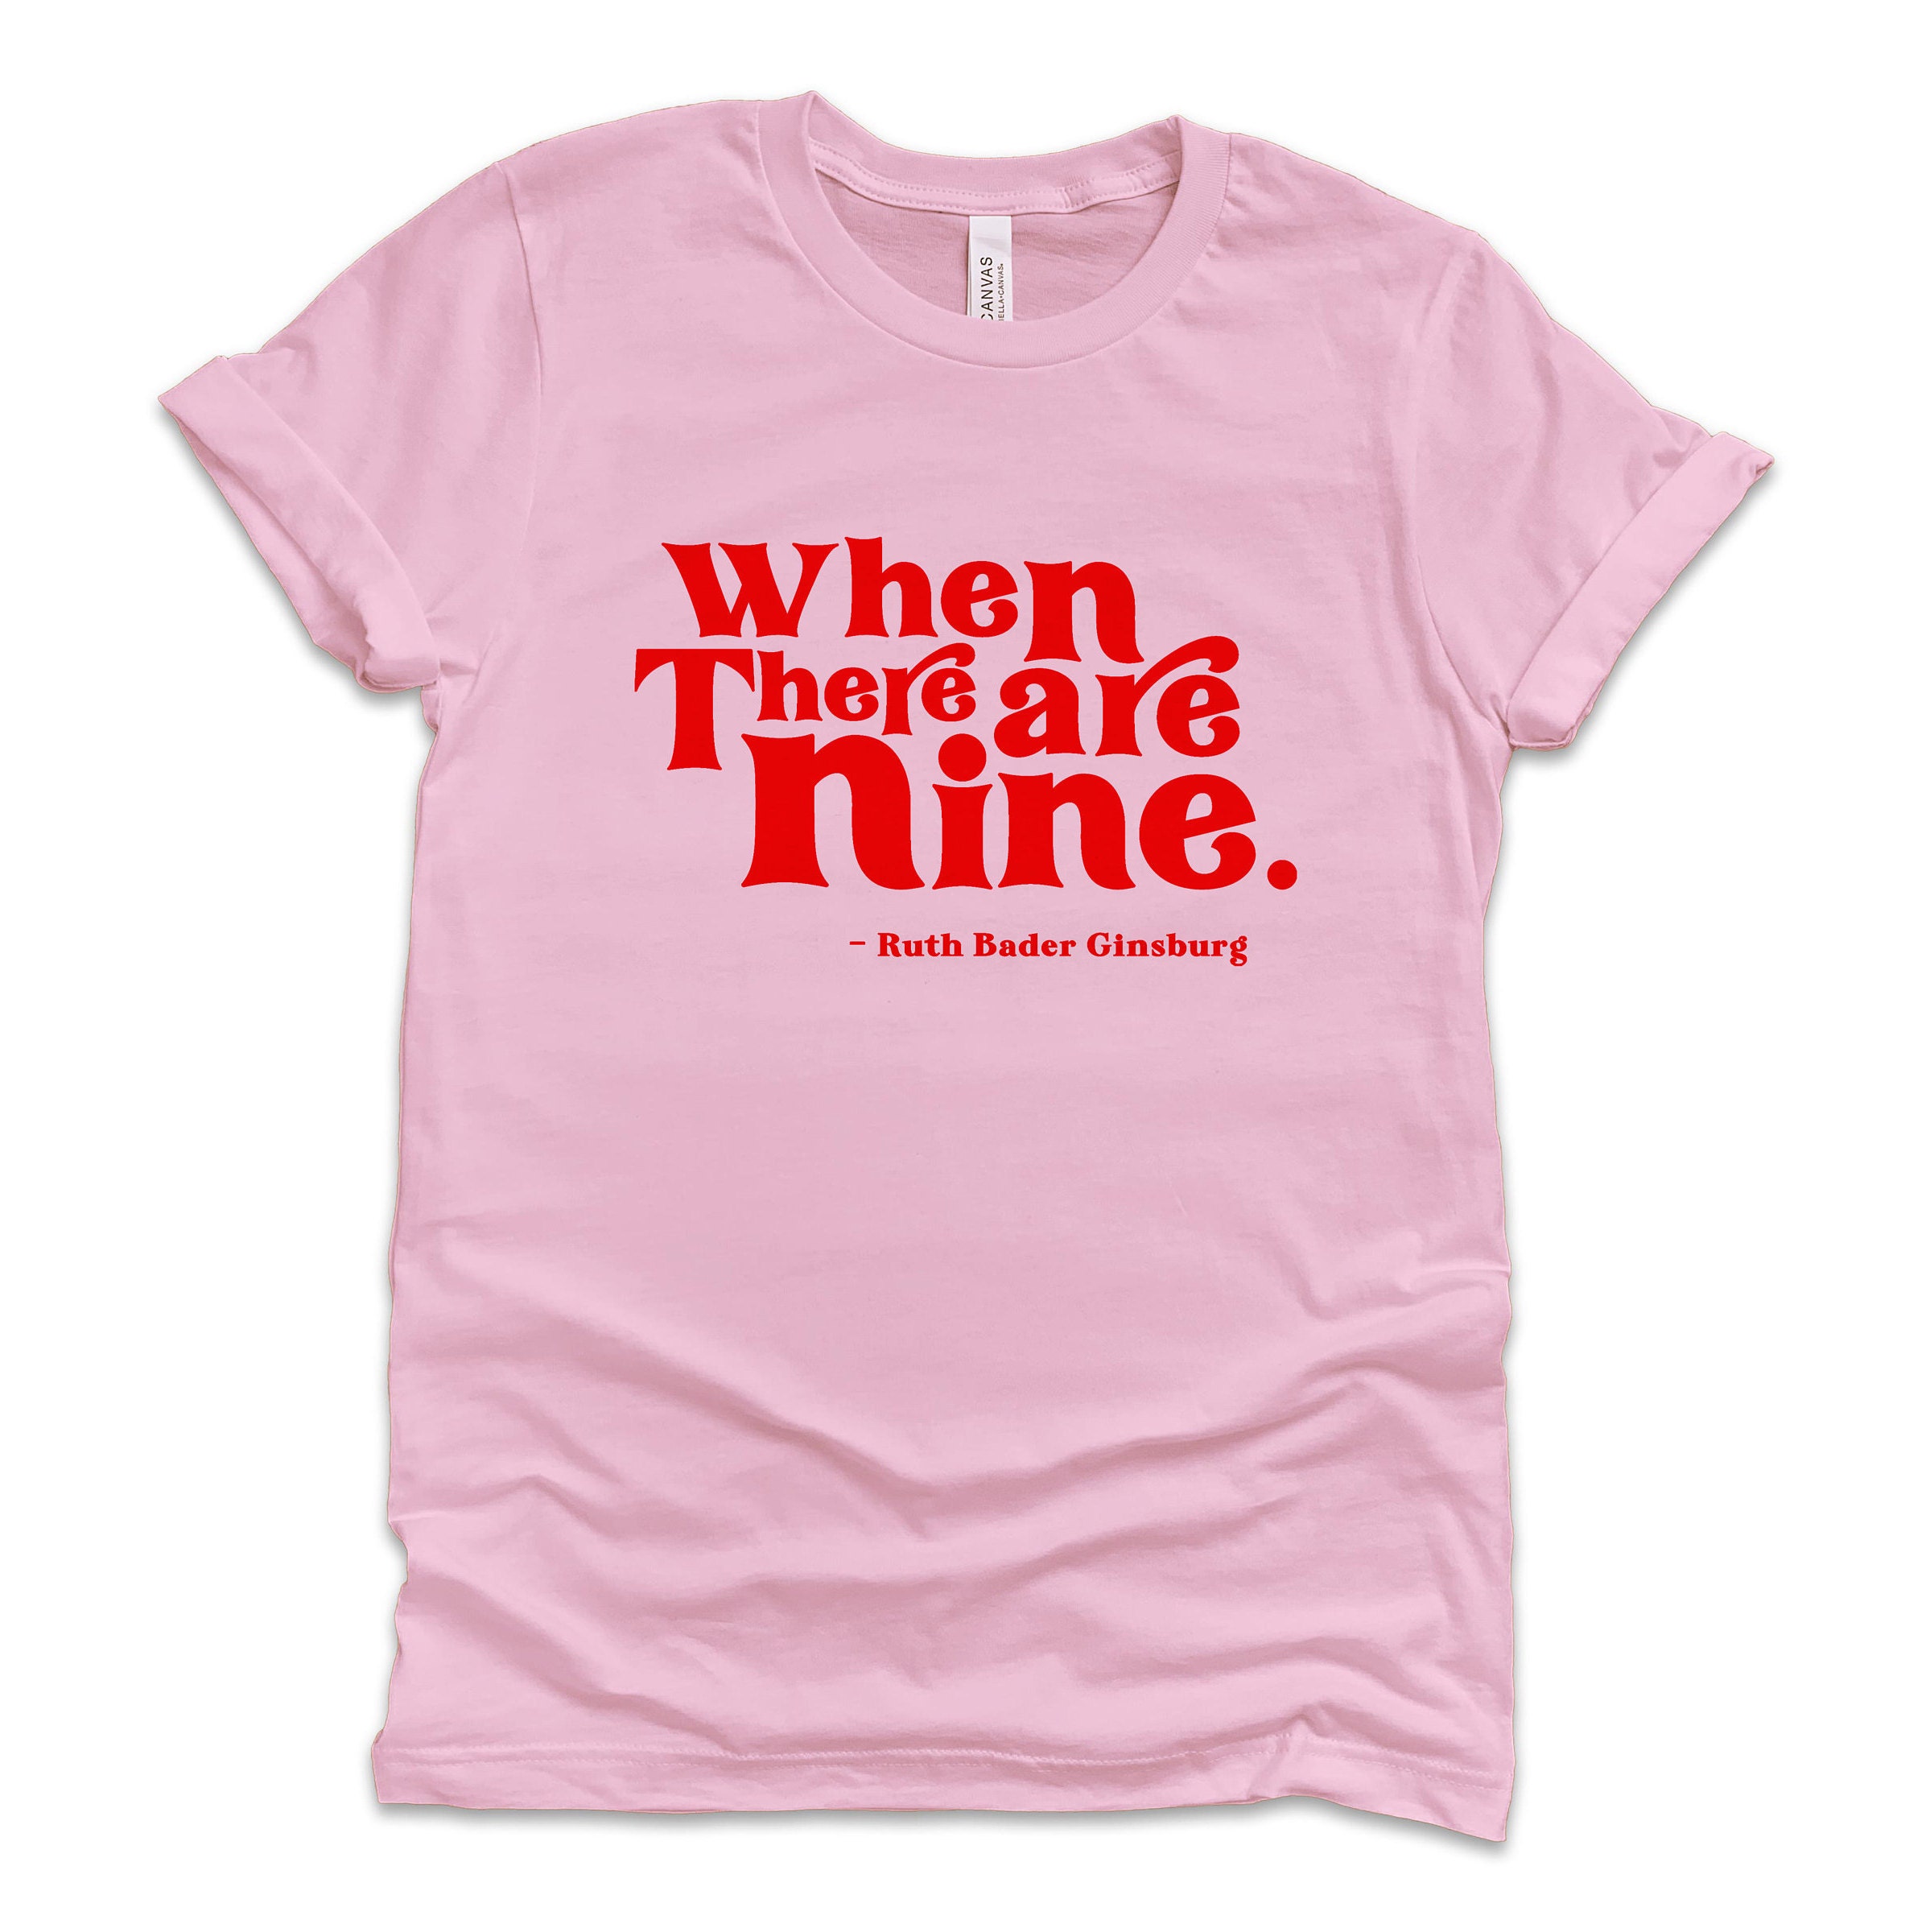 Ruth Bader Ginsburg Tshirt-RBG Shirt-Feminist Tshirt-Equality | Etsy